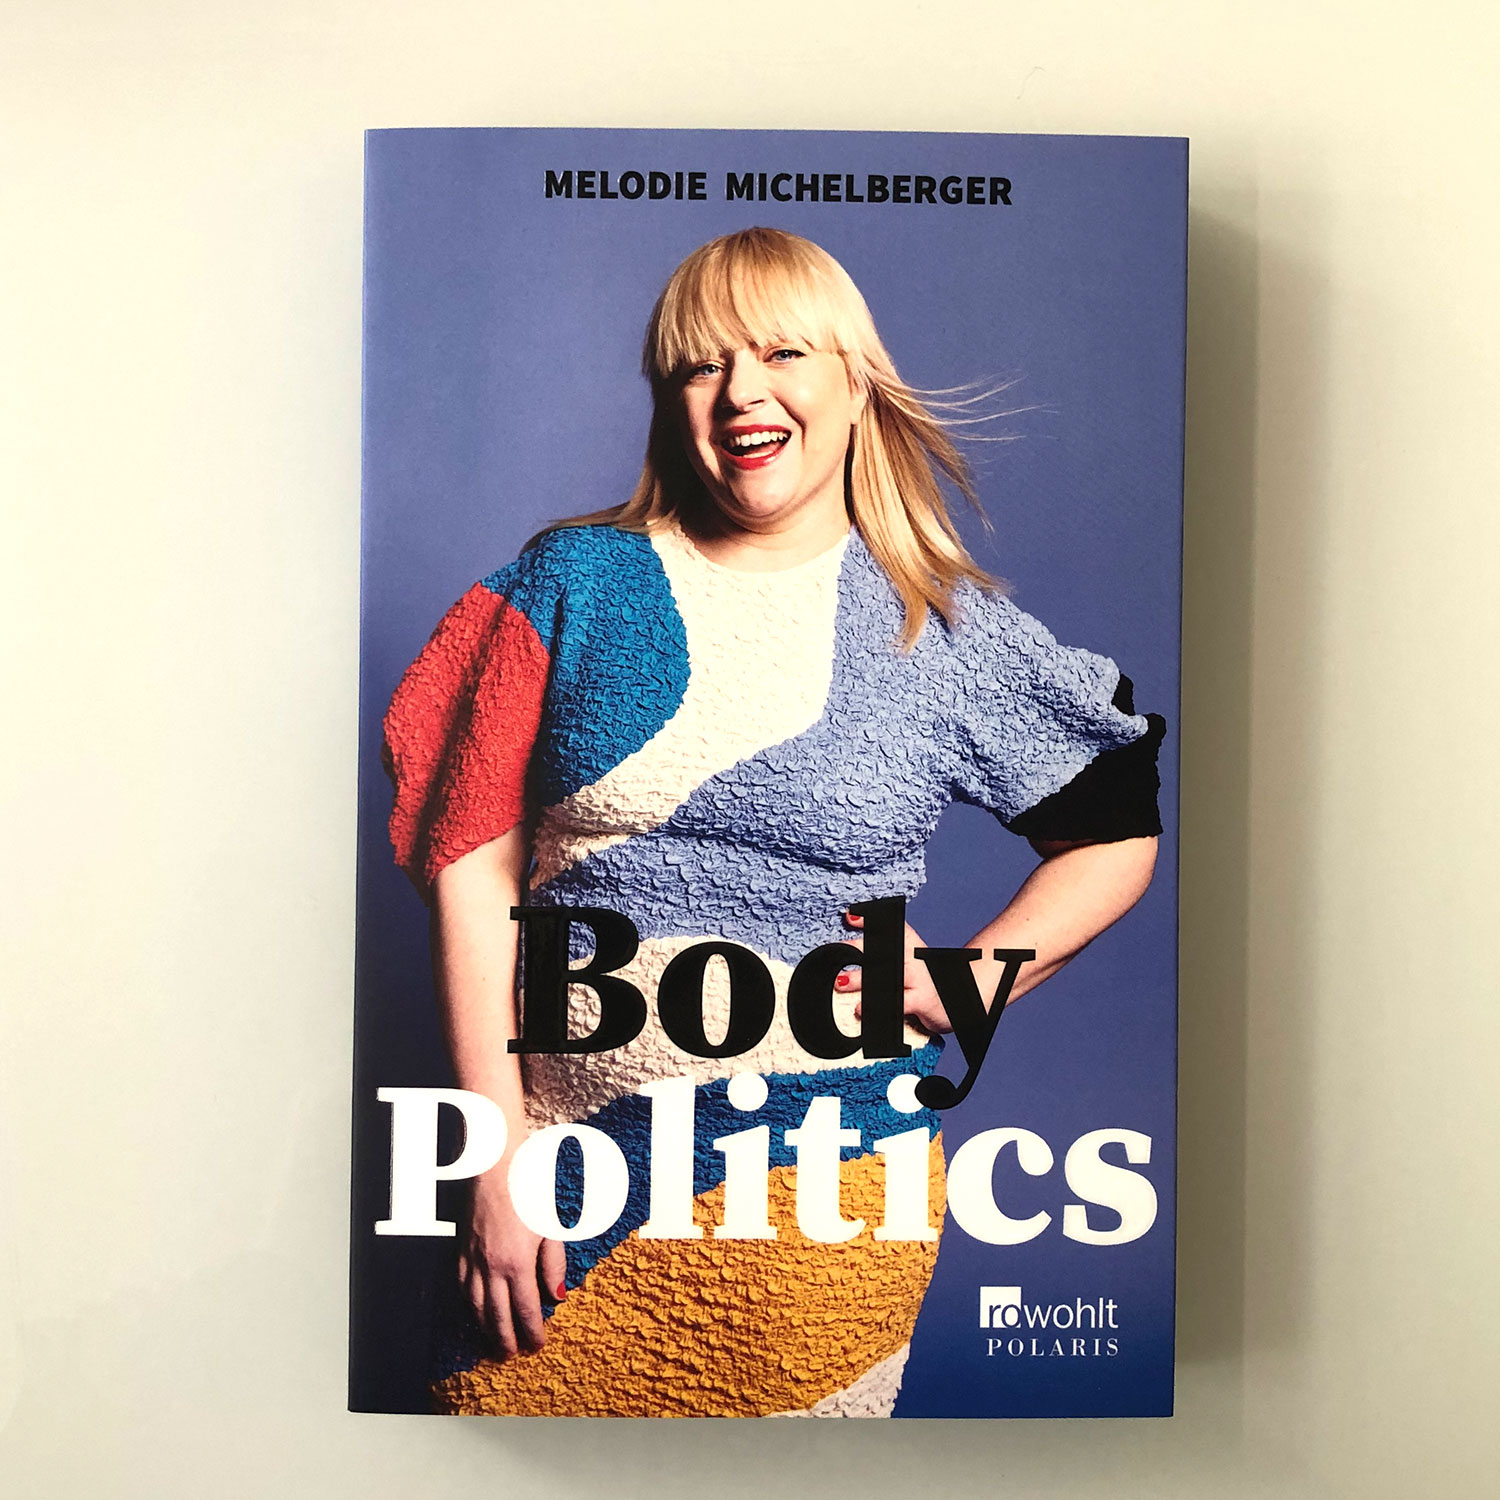 Body Politics - Buch über vermeintliche Schönheitsideale und wie man den Teufelskreis durchbrechen kann - von Melodie Michelberger - erschienen im Rowohlt Verlag